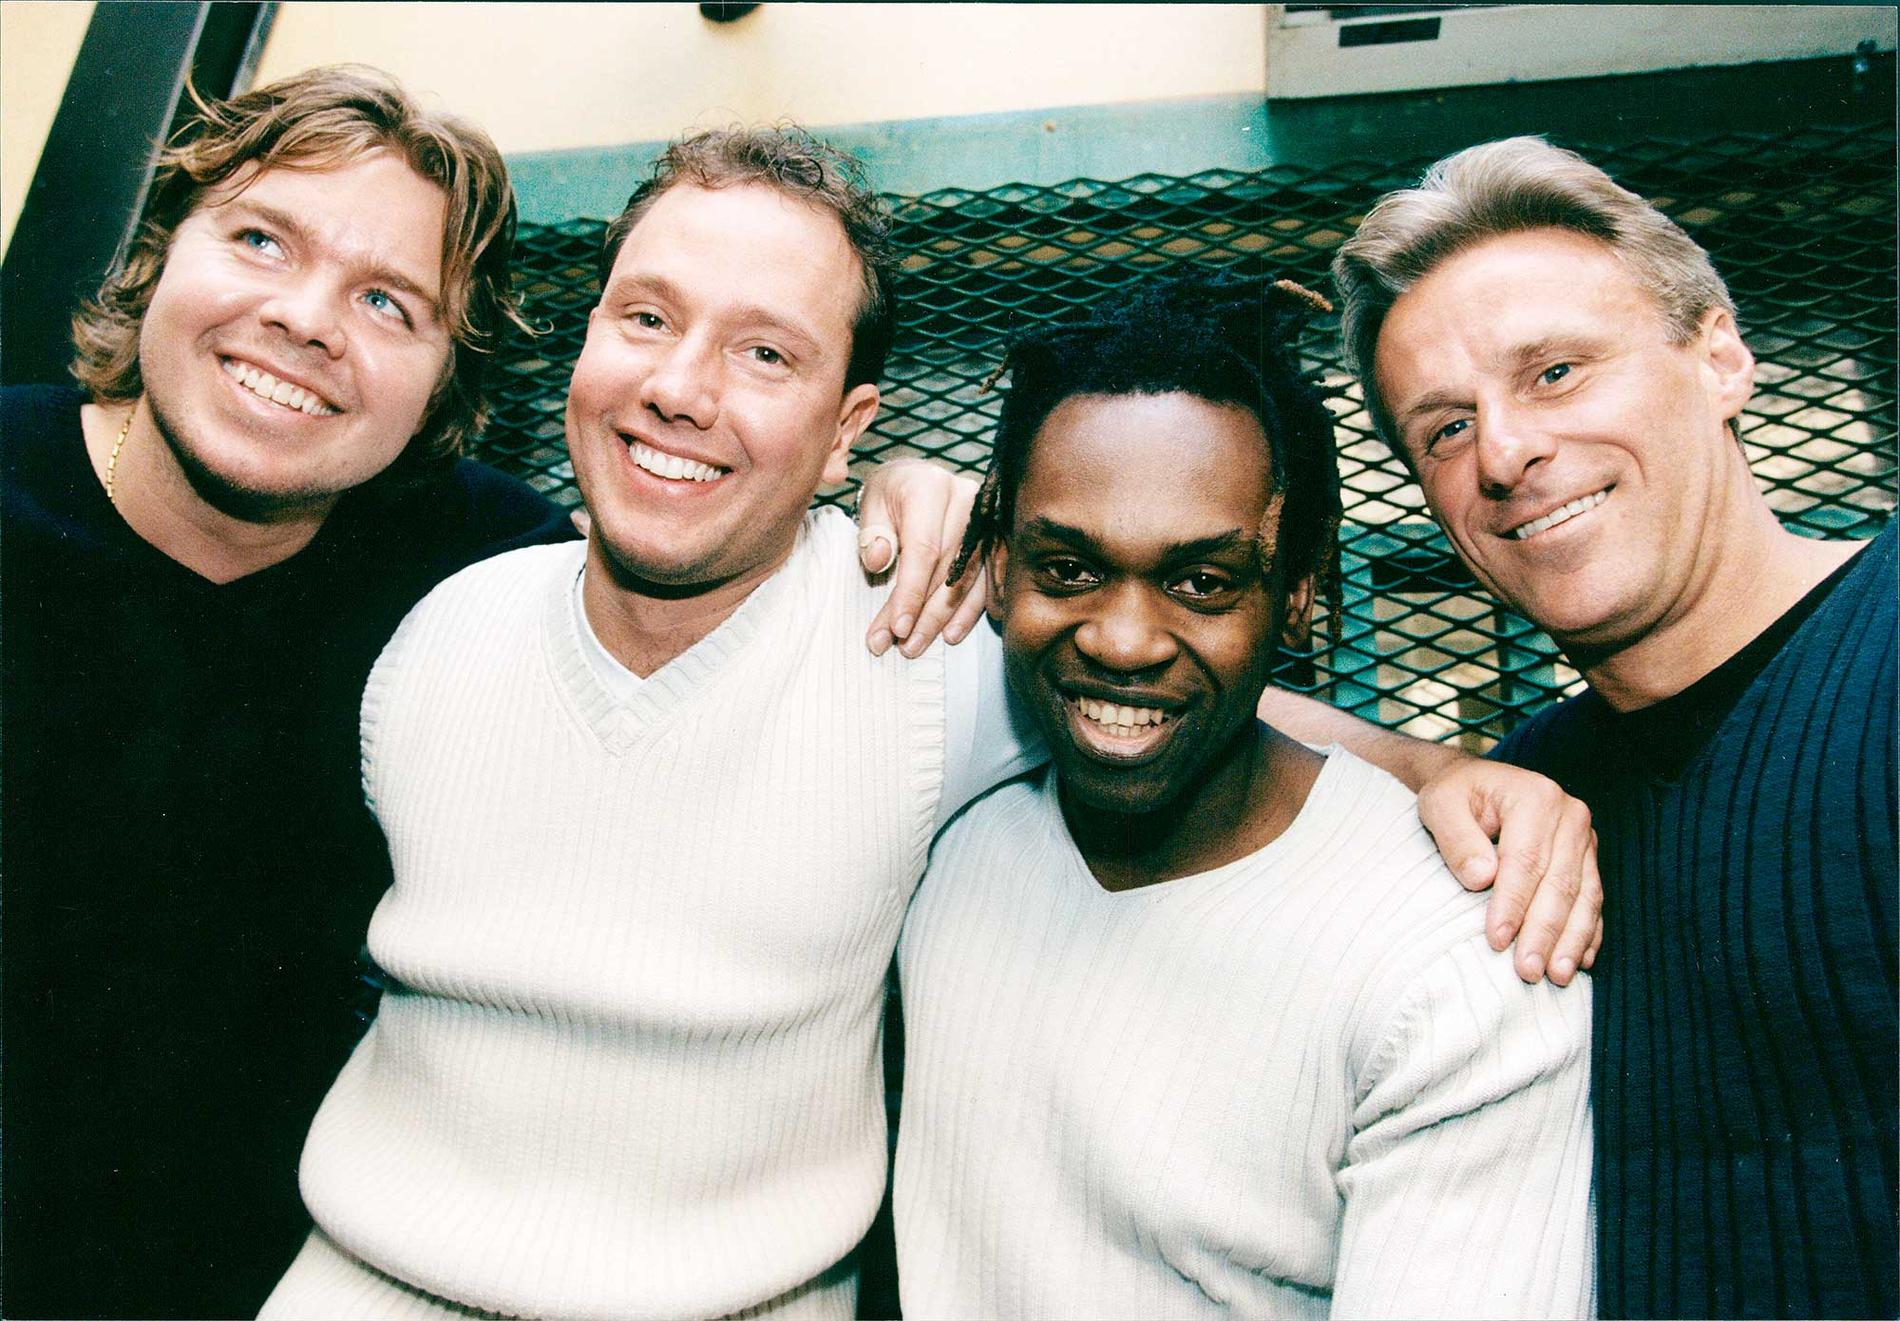 Friends in Need 1999: Tomas Brolin, Mattias Frisk, Dr Alban och Björn Borg.